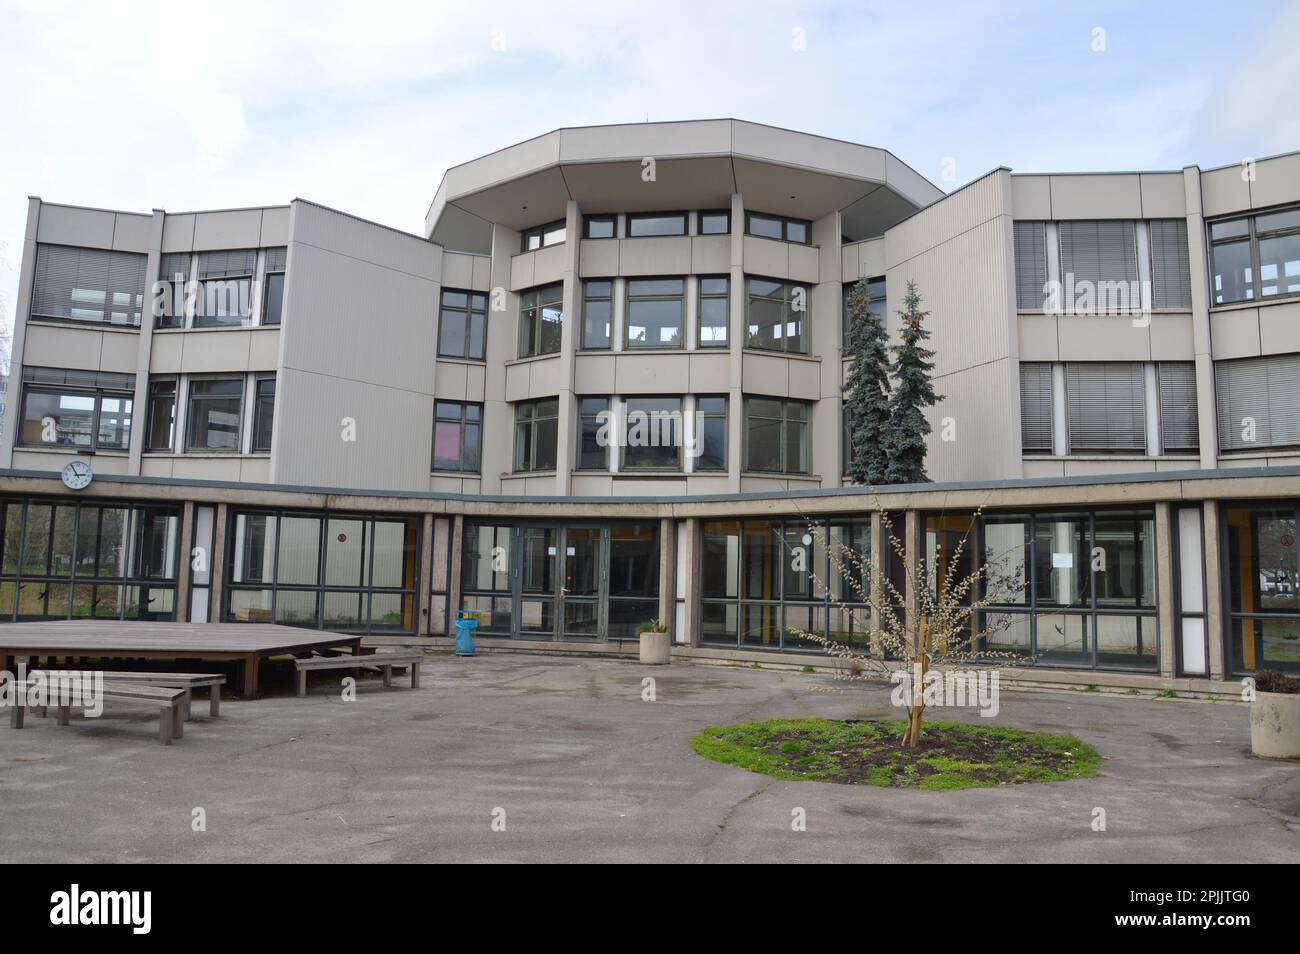 Berlin, Germany - March 26, 2023 - The Walter Gropius Schule designed by Walter Gropius in Gropiusstadt. The school was opening in 1968. (Photo by Markku Rainer Peltonen) Stock Photo